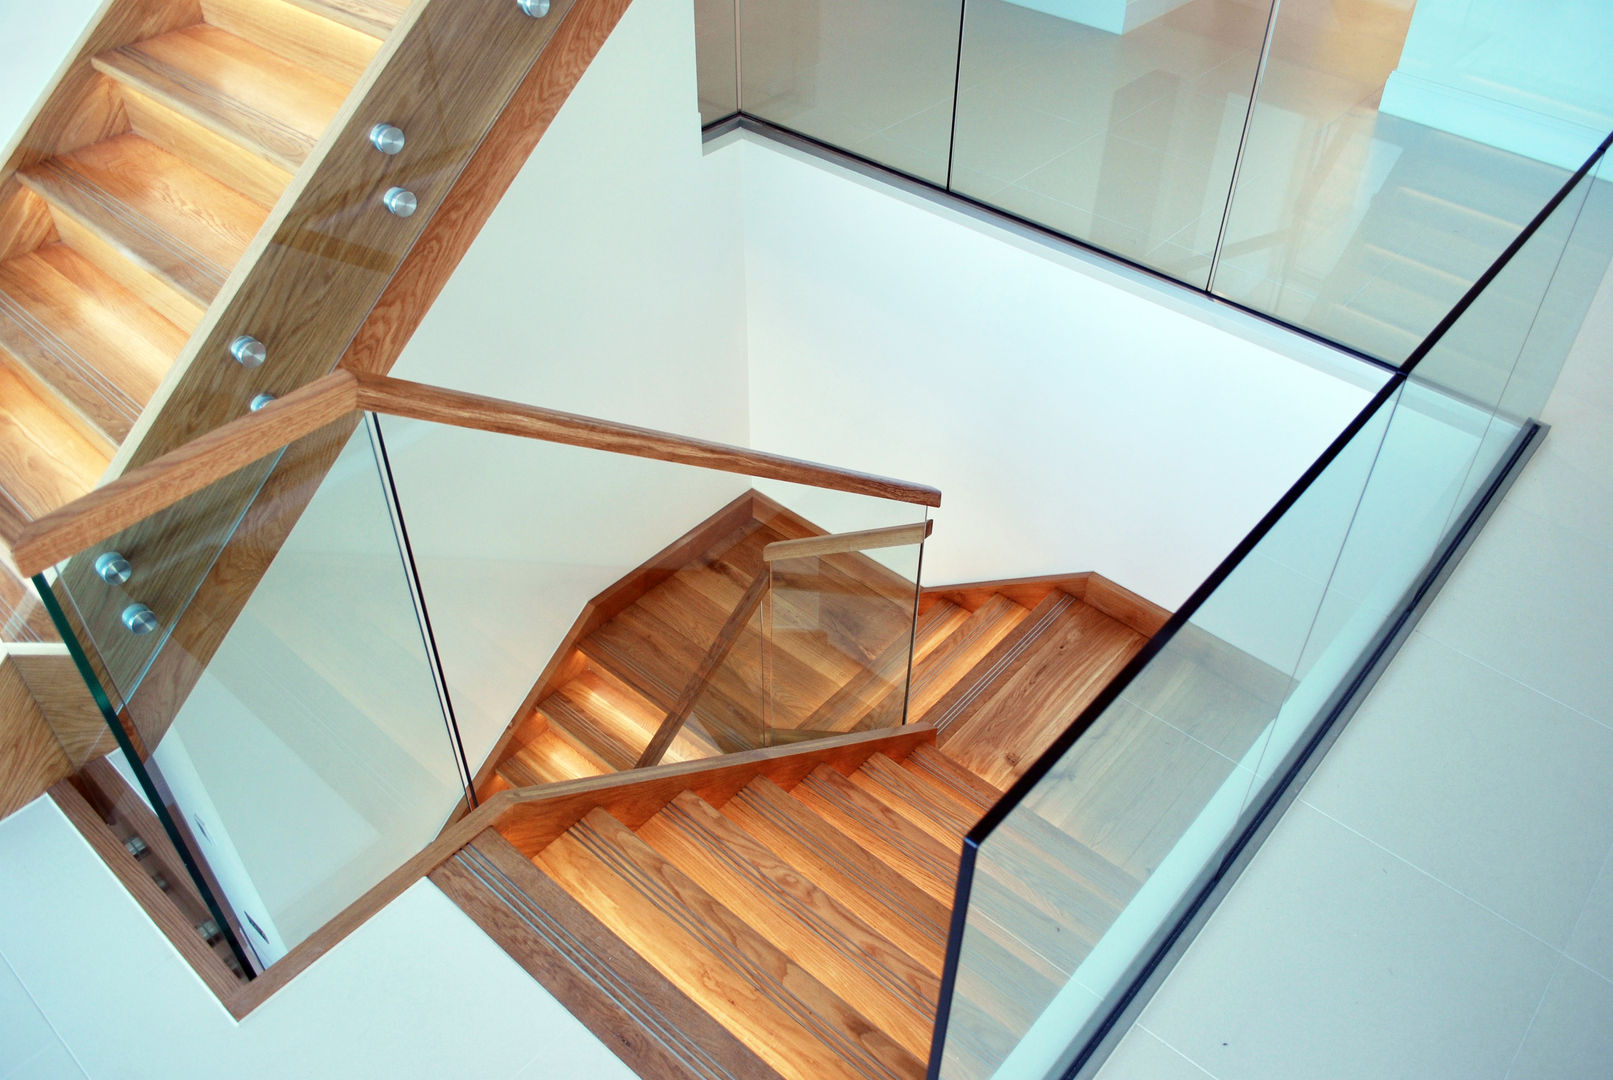 ✔️ Ventajas de Instalar Escaleras de Madera para Interior en Casa